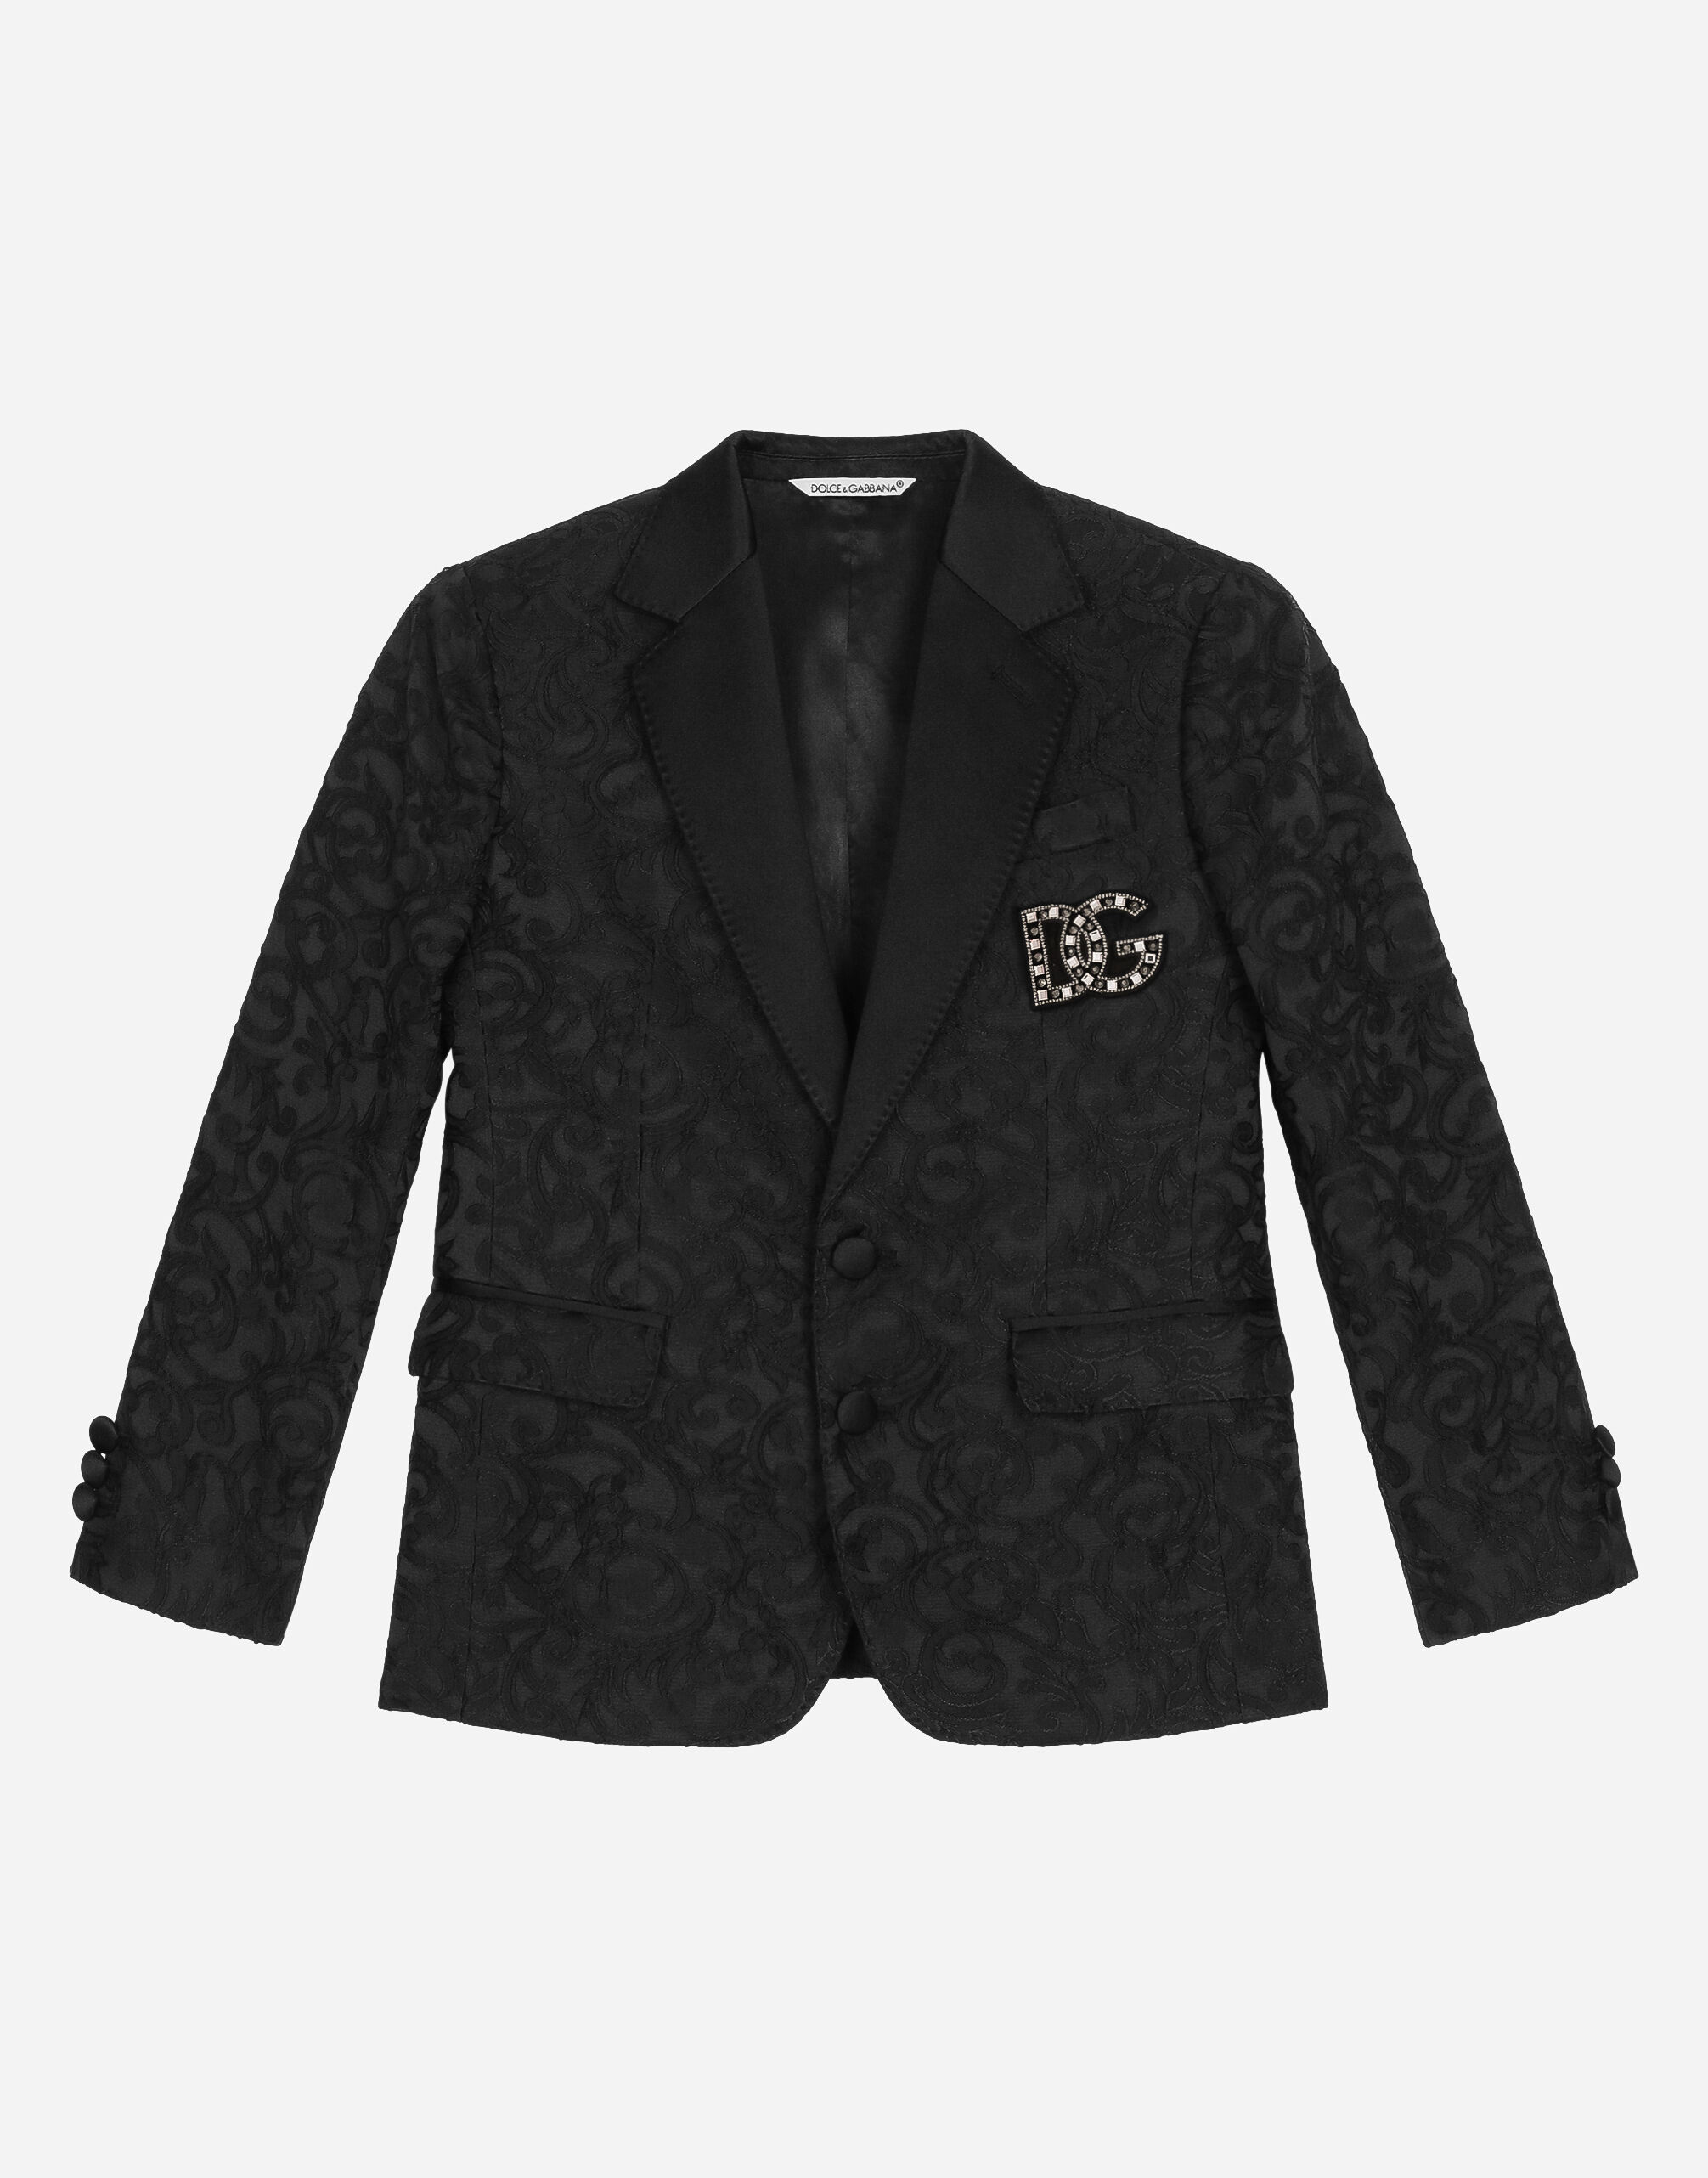 Dolce & Gabbana Single-breasted jacquard jacket Black EB0003AB000